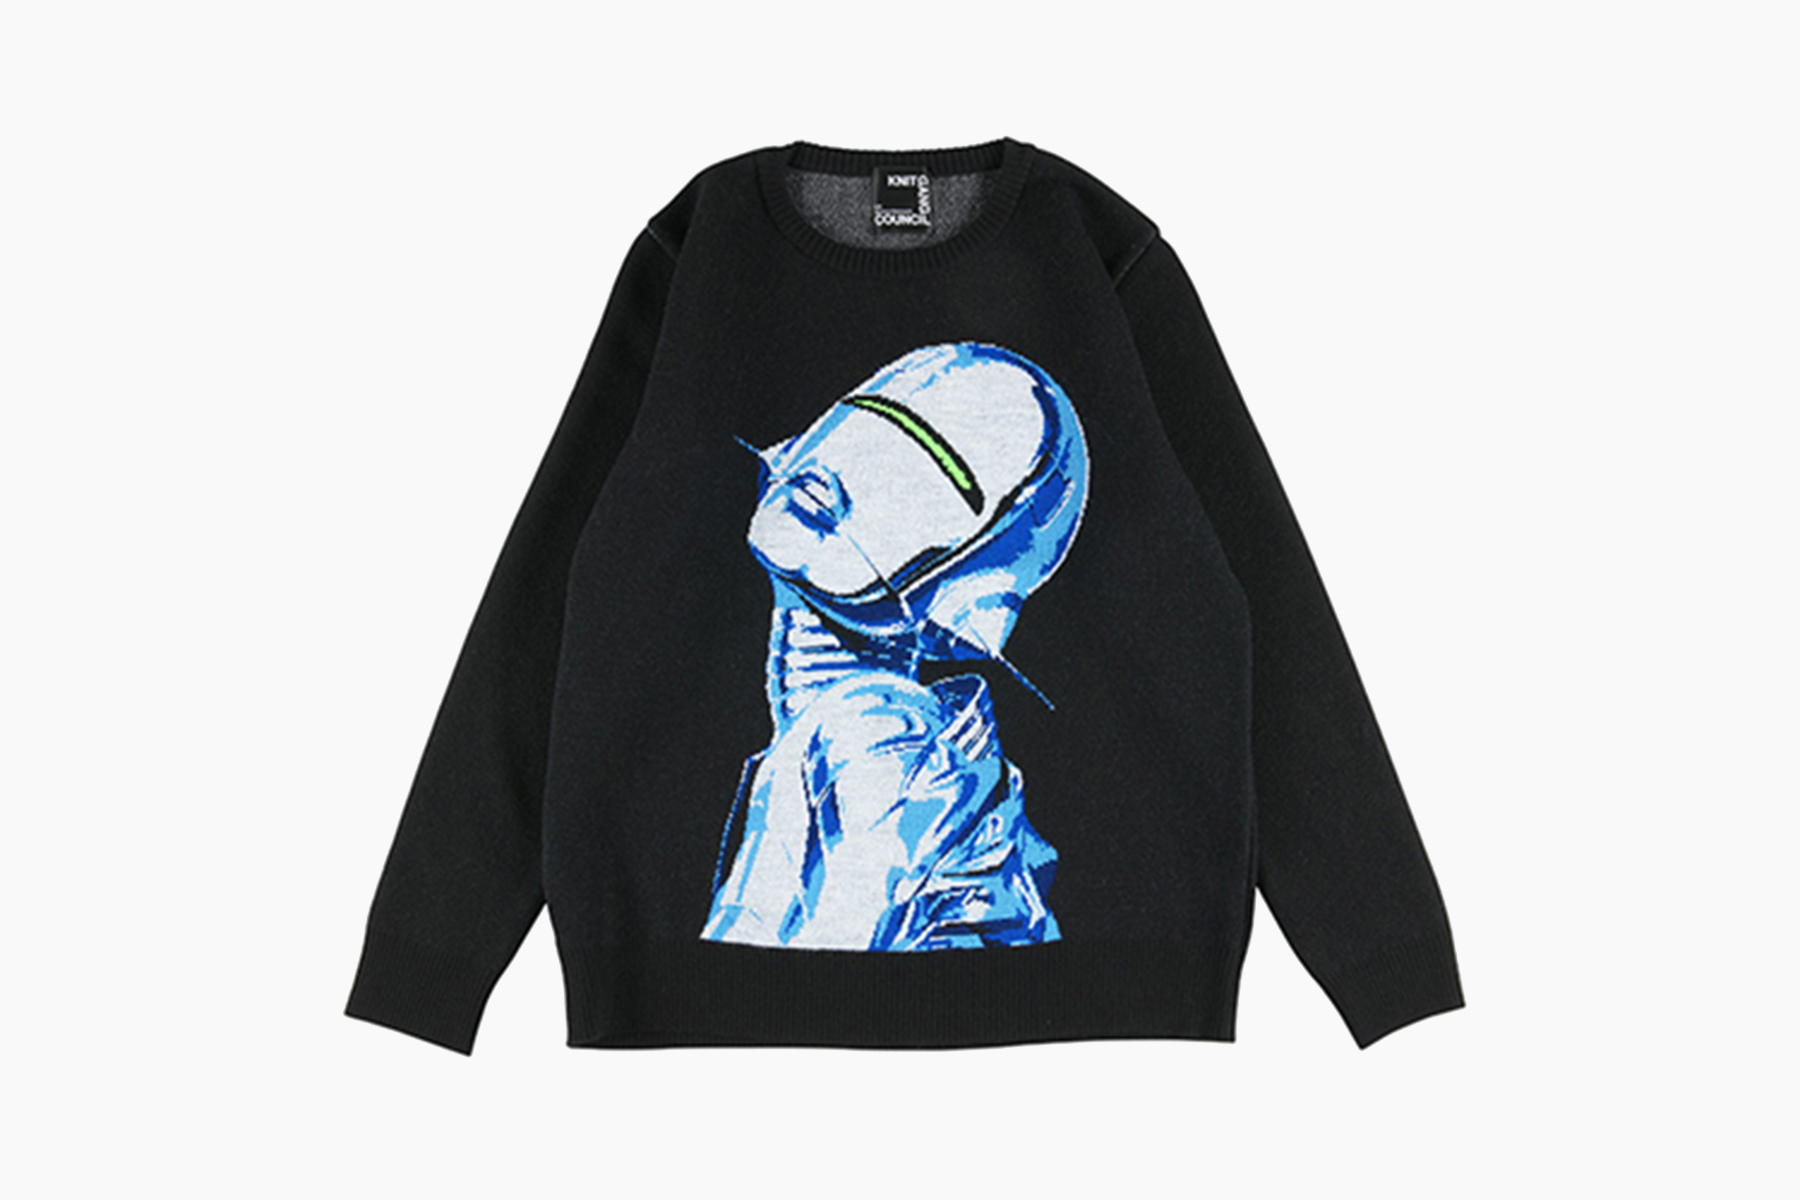 Hajime Sorayama x Knit Gang Council “Sexy Robot” Crewneck Sweater 